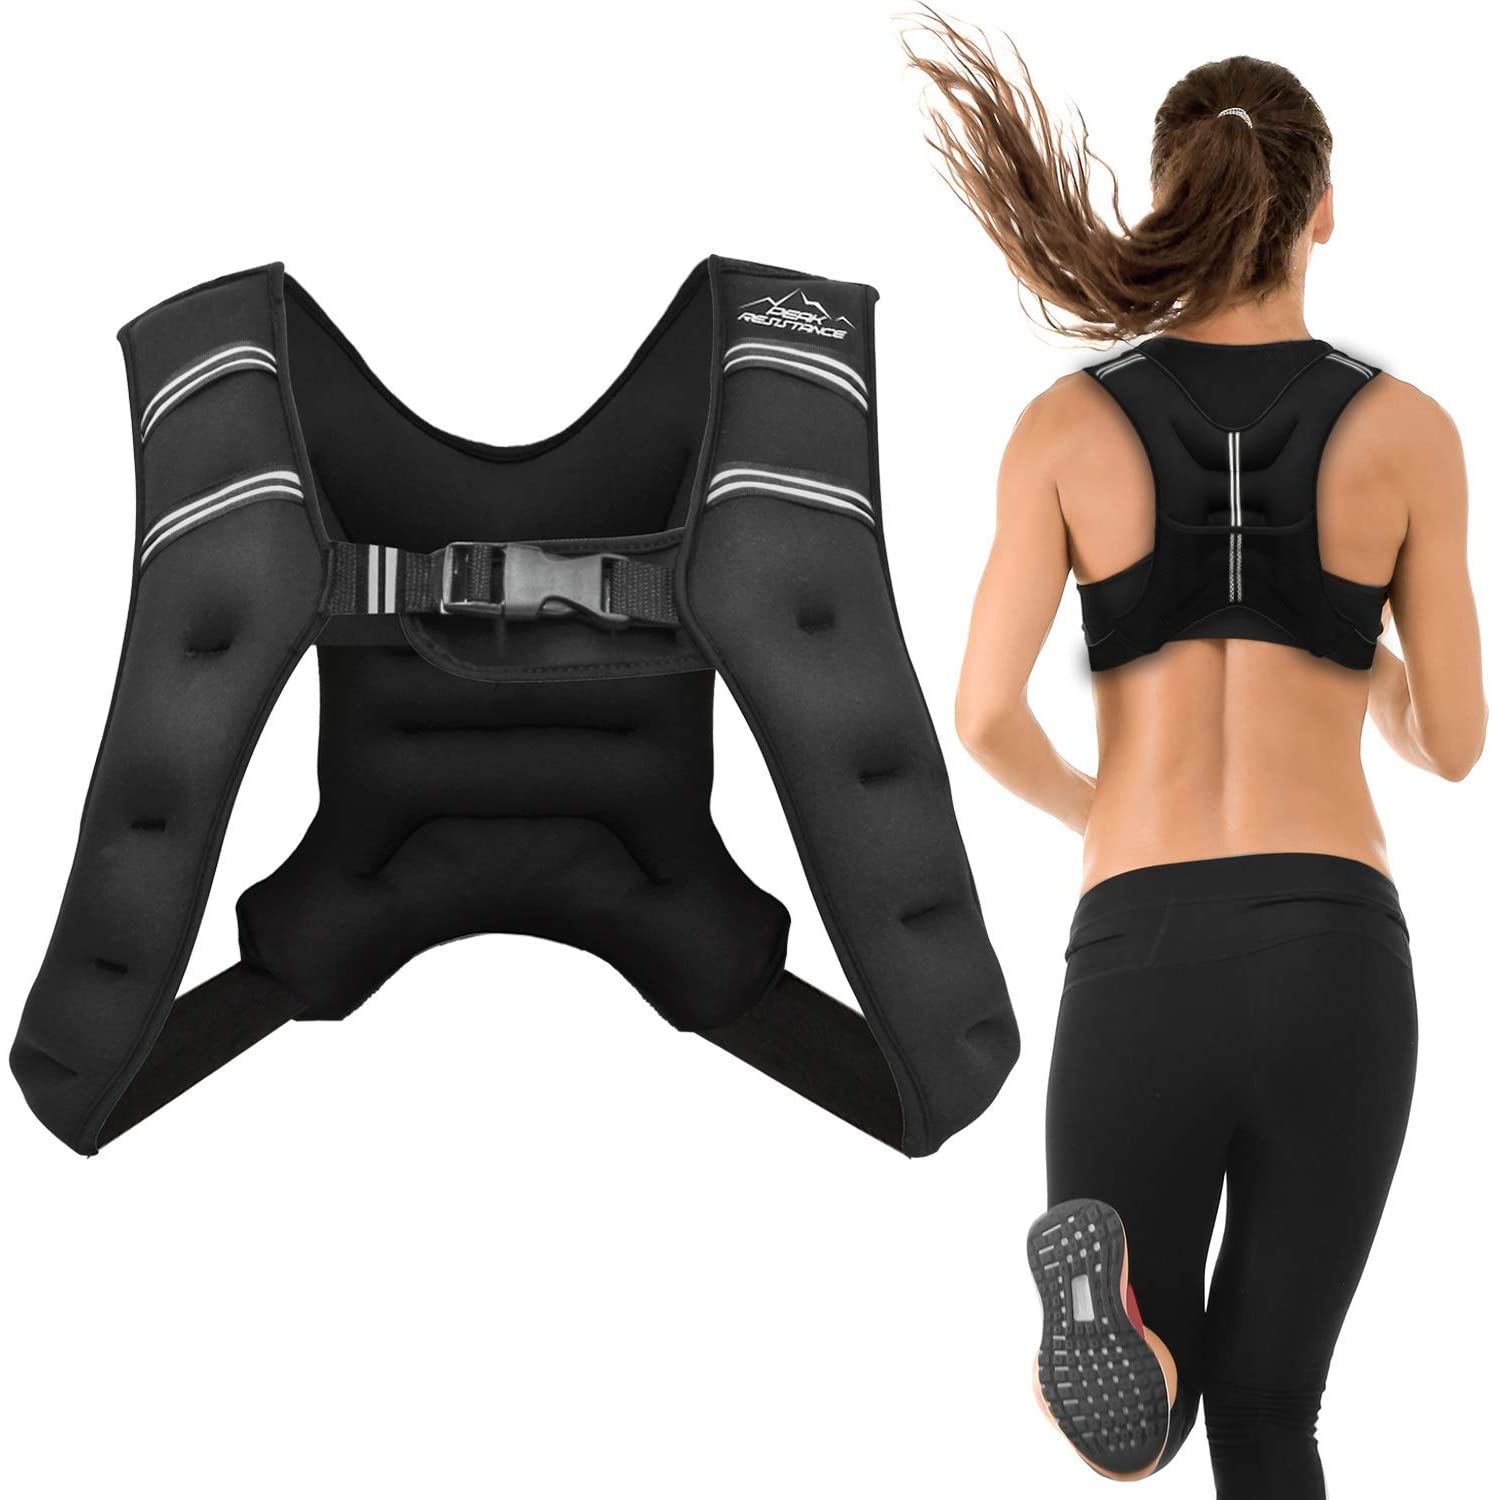 Aduro Sport Weighted Vest Workout Equipment